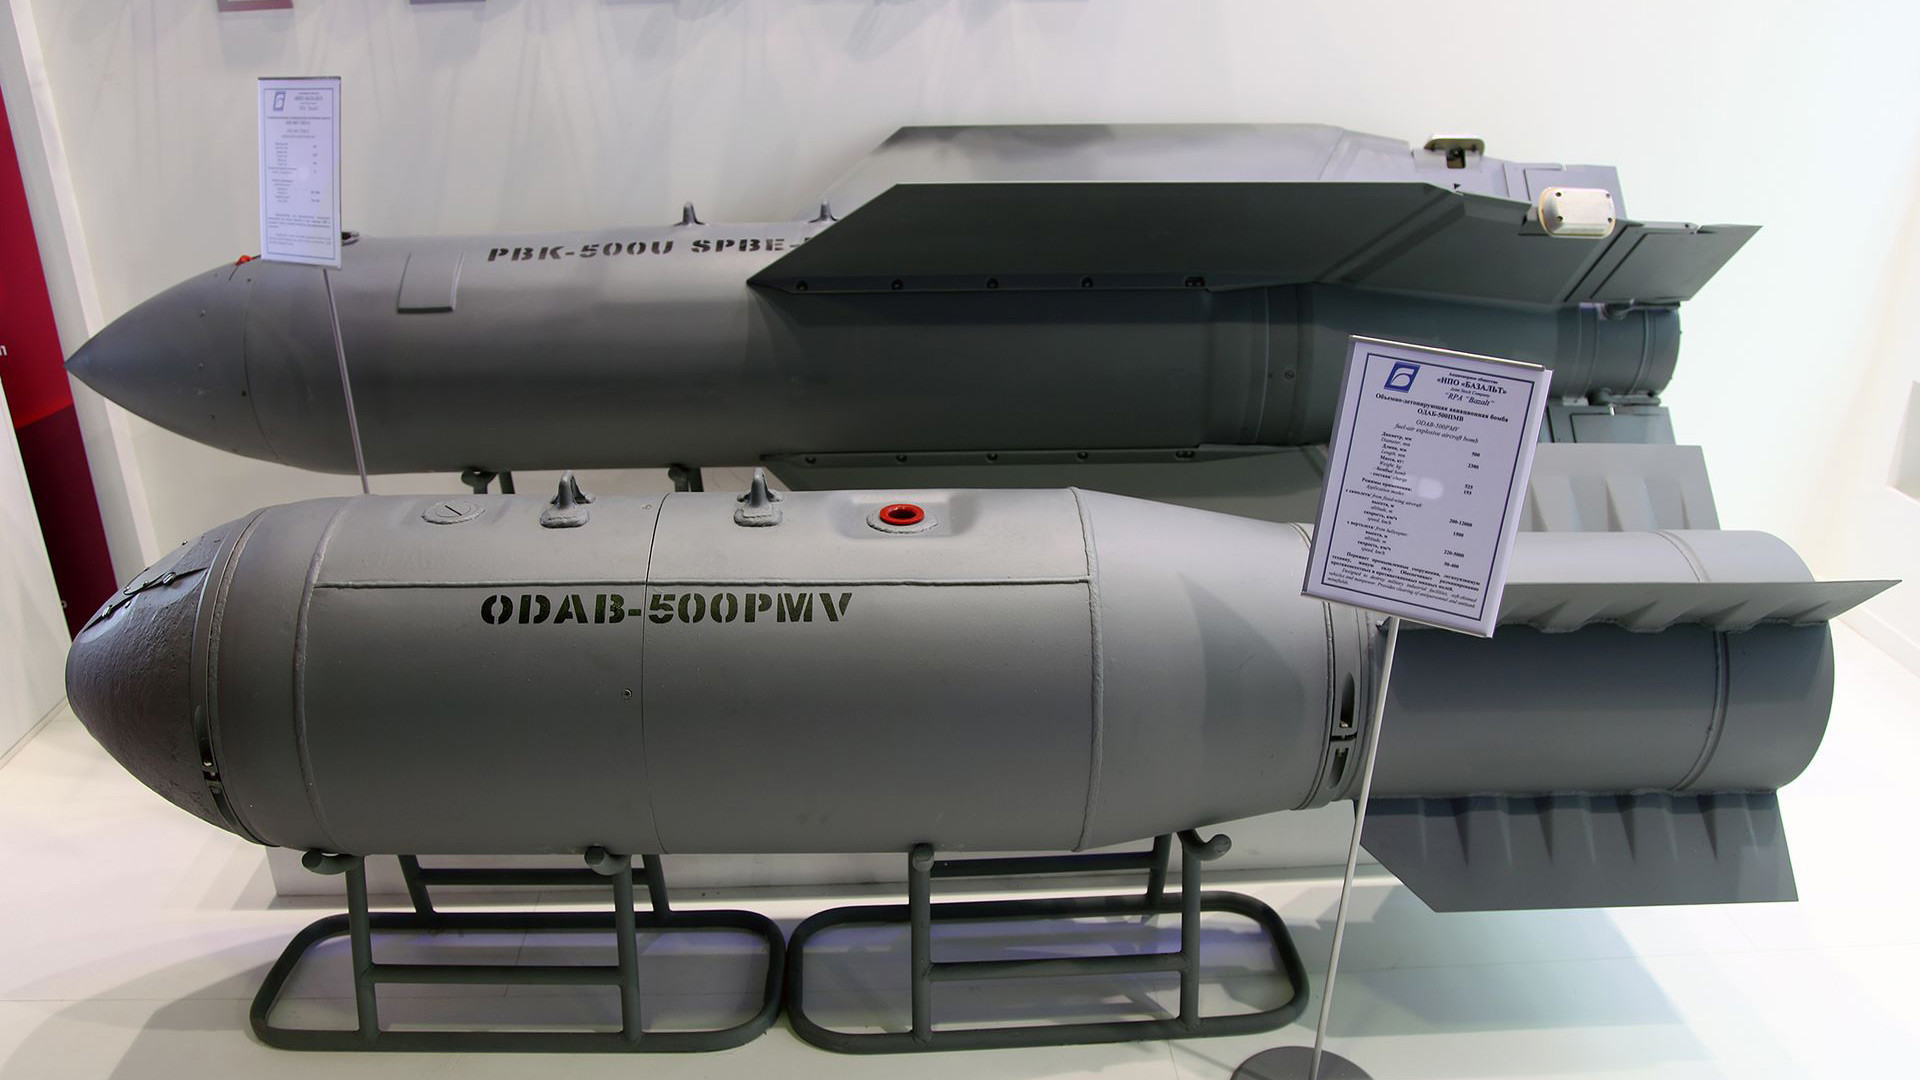 Bomba ODAB-500PMB.